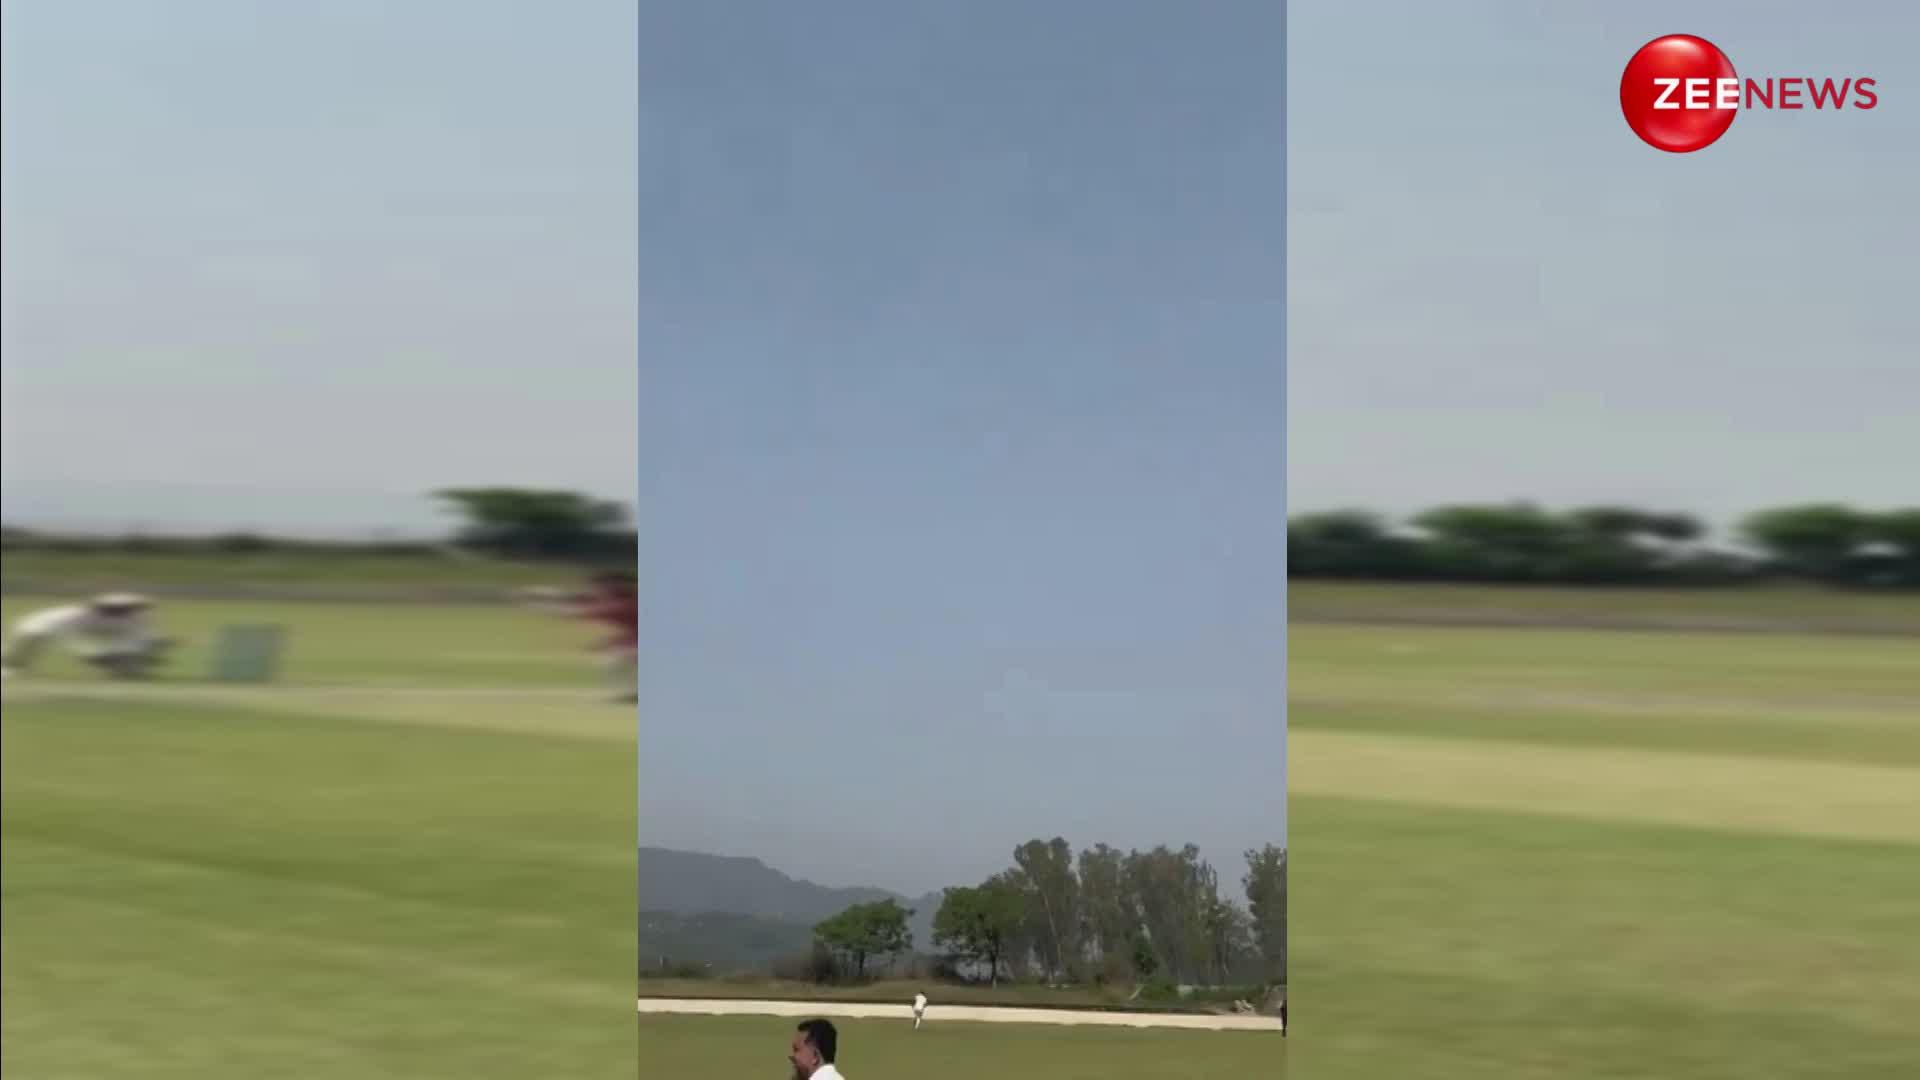 मोदी के मंत्री बने नंबर 1 बल्लेबाज, क्रिकेट पिच पर छक्के लगाते आए नजर; वायरल हुआ वीडियो